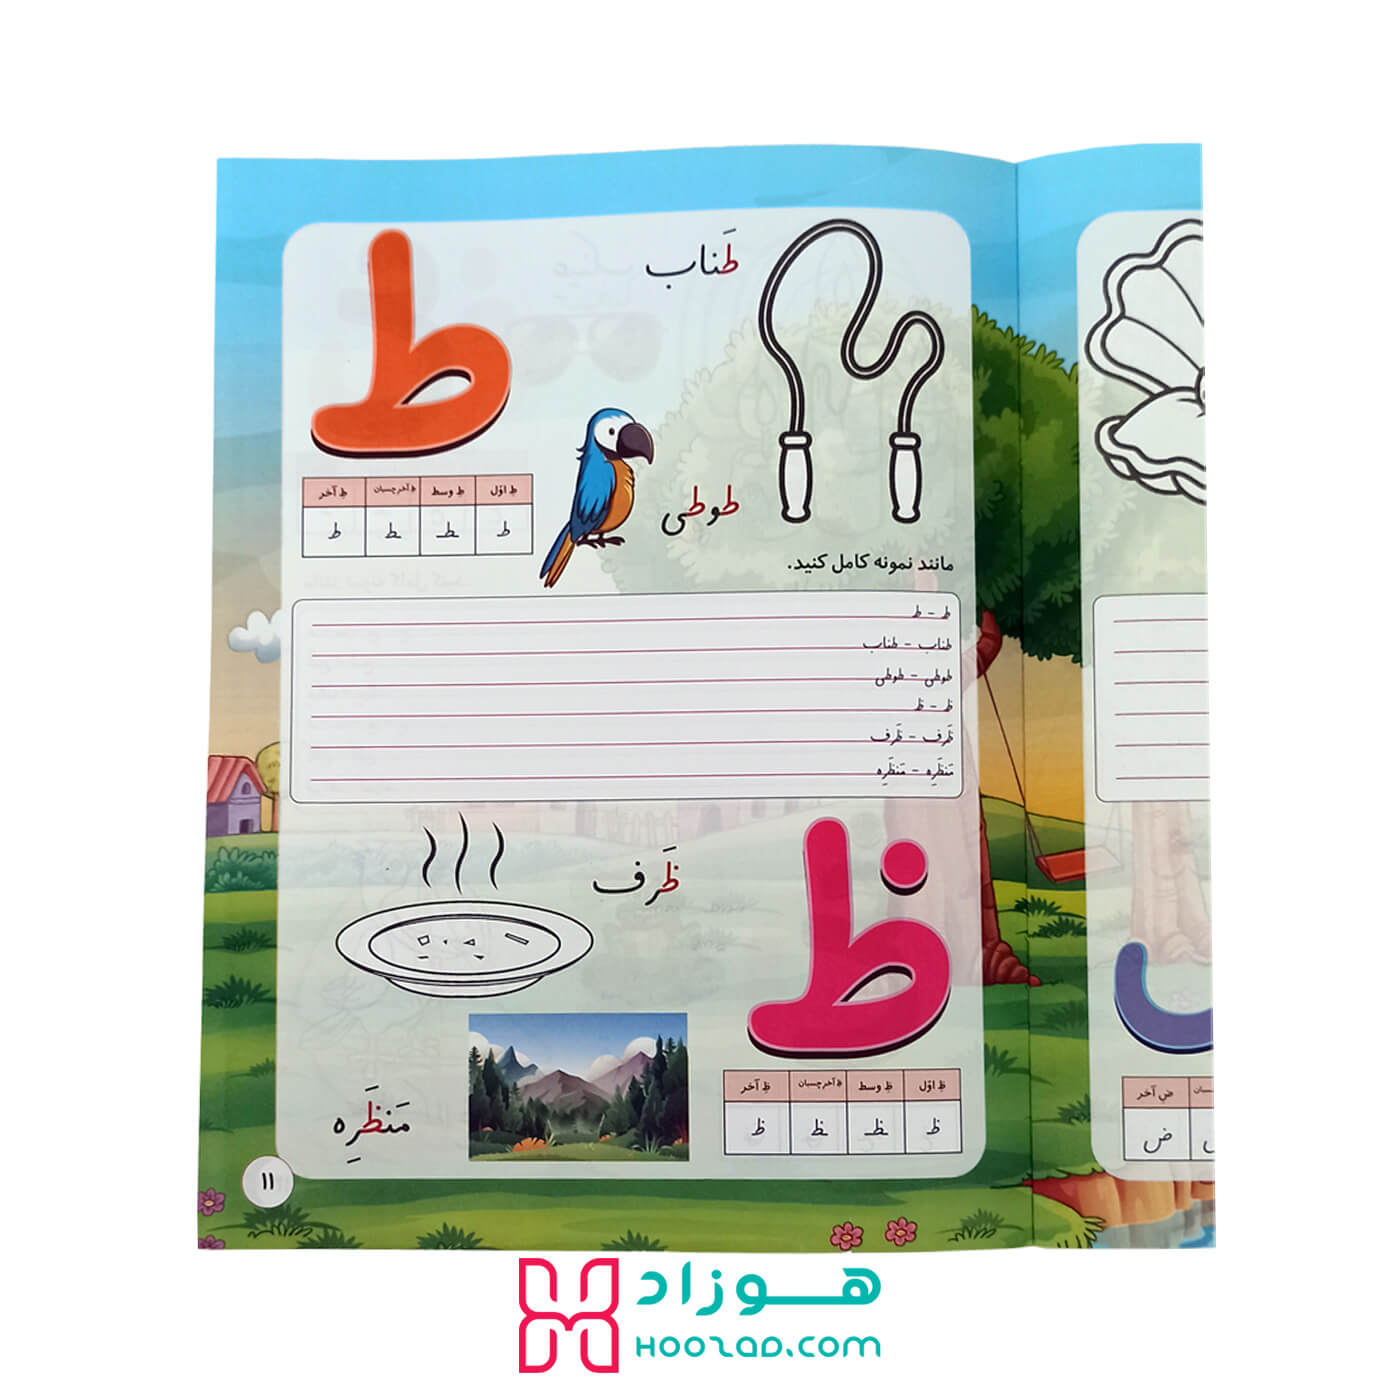 کتاب آموزش الفبای فارسی با رنگ آمیزی و نرم افزار